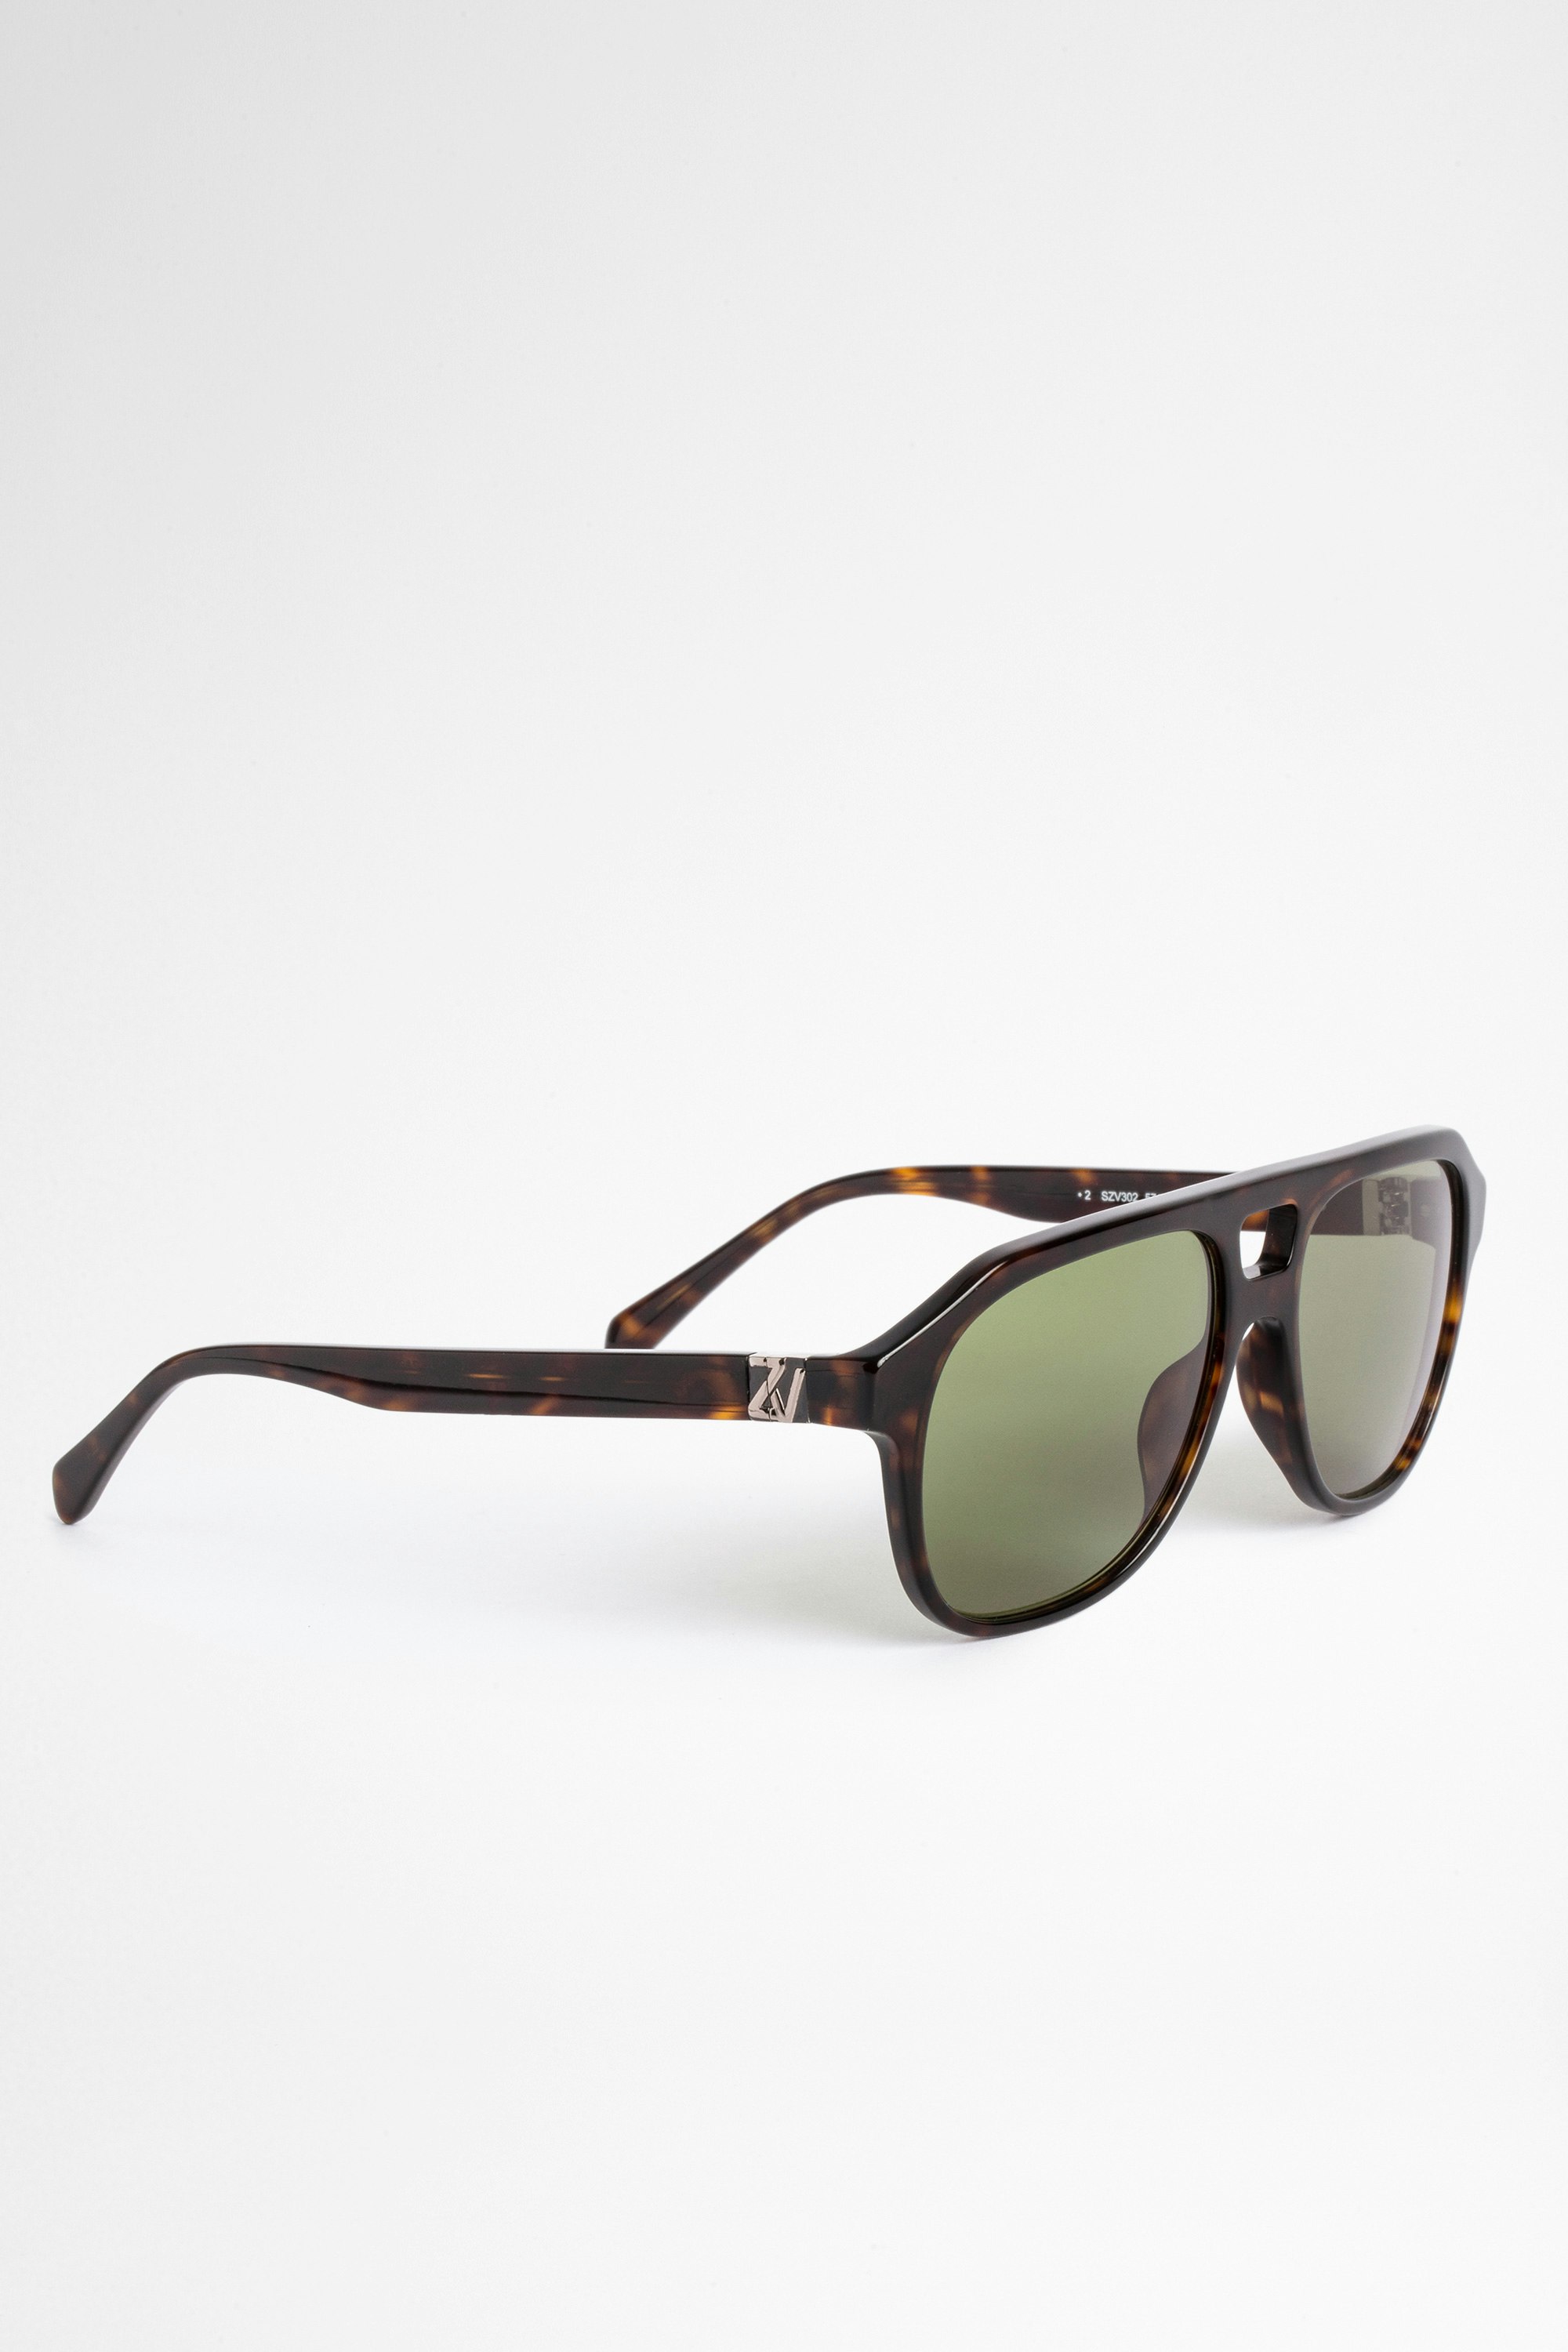 Brille Shiny Unisex Zadig&Volatire acetate sunglasses in havana color.